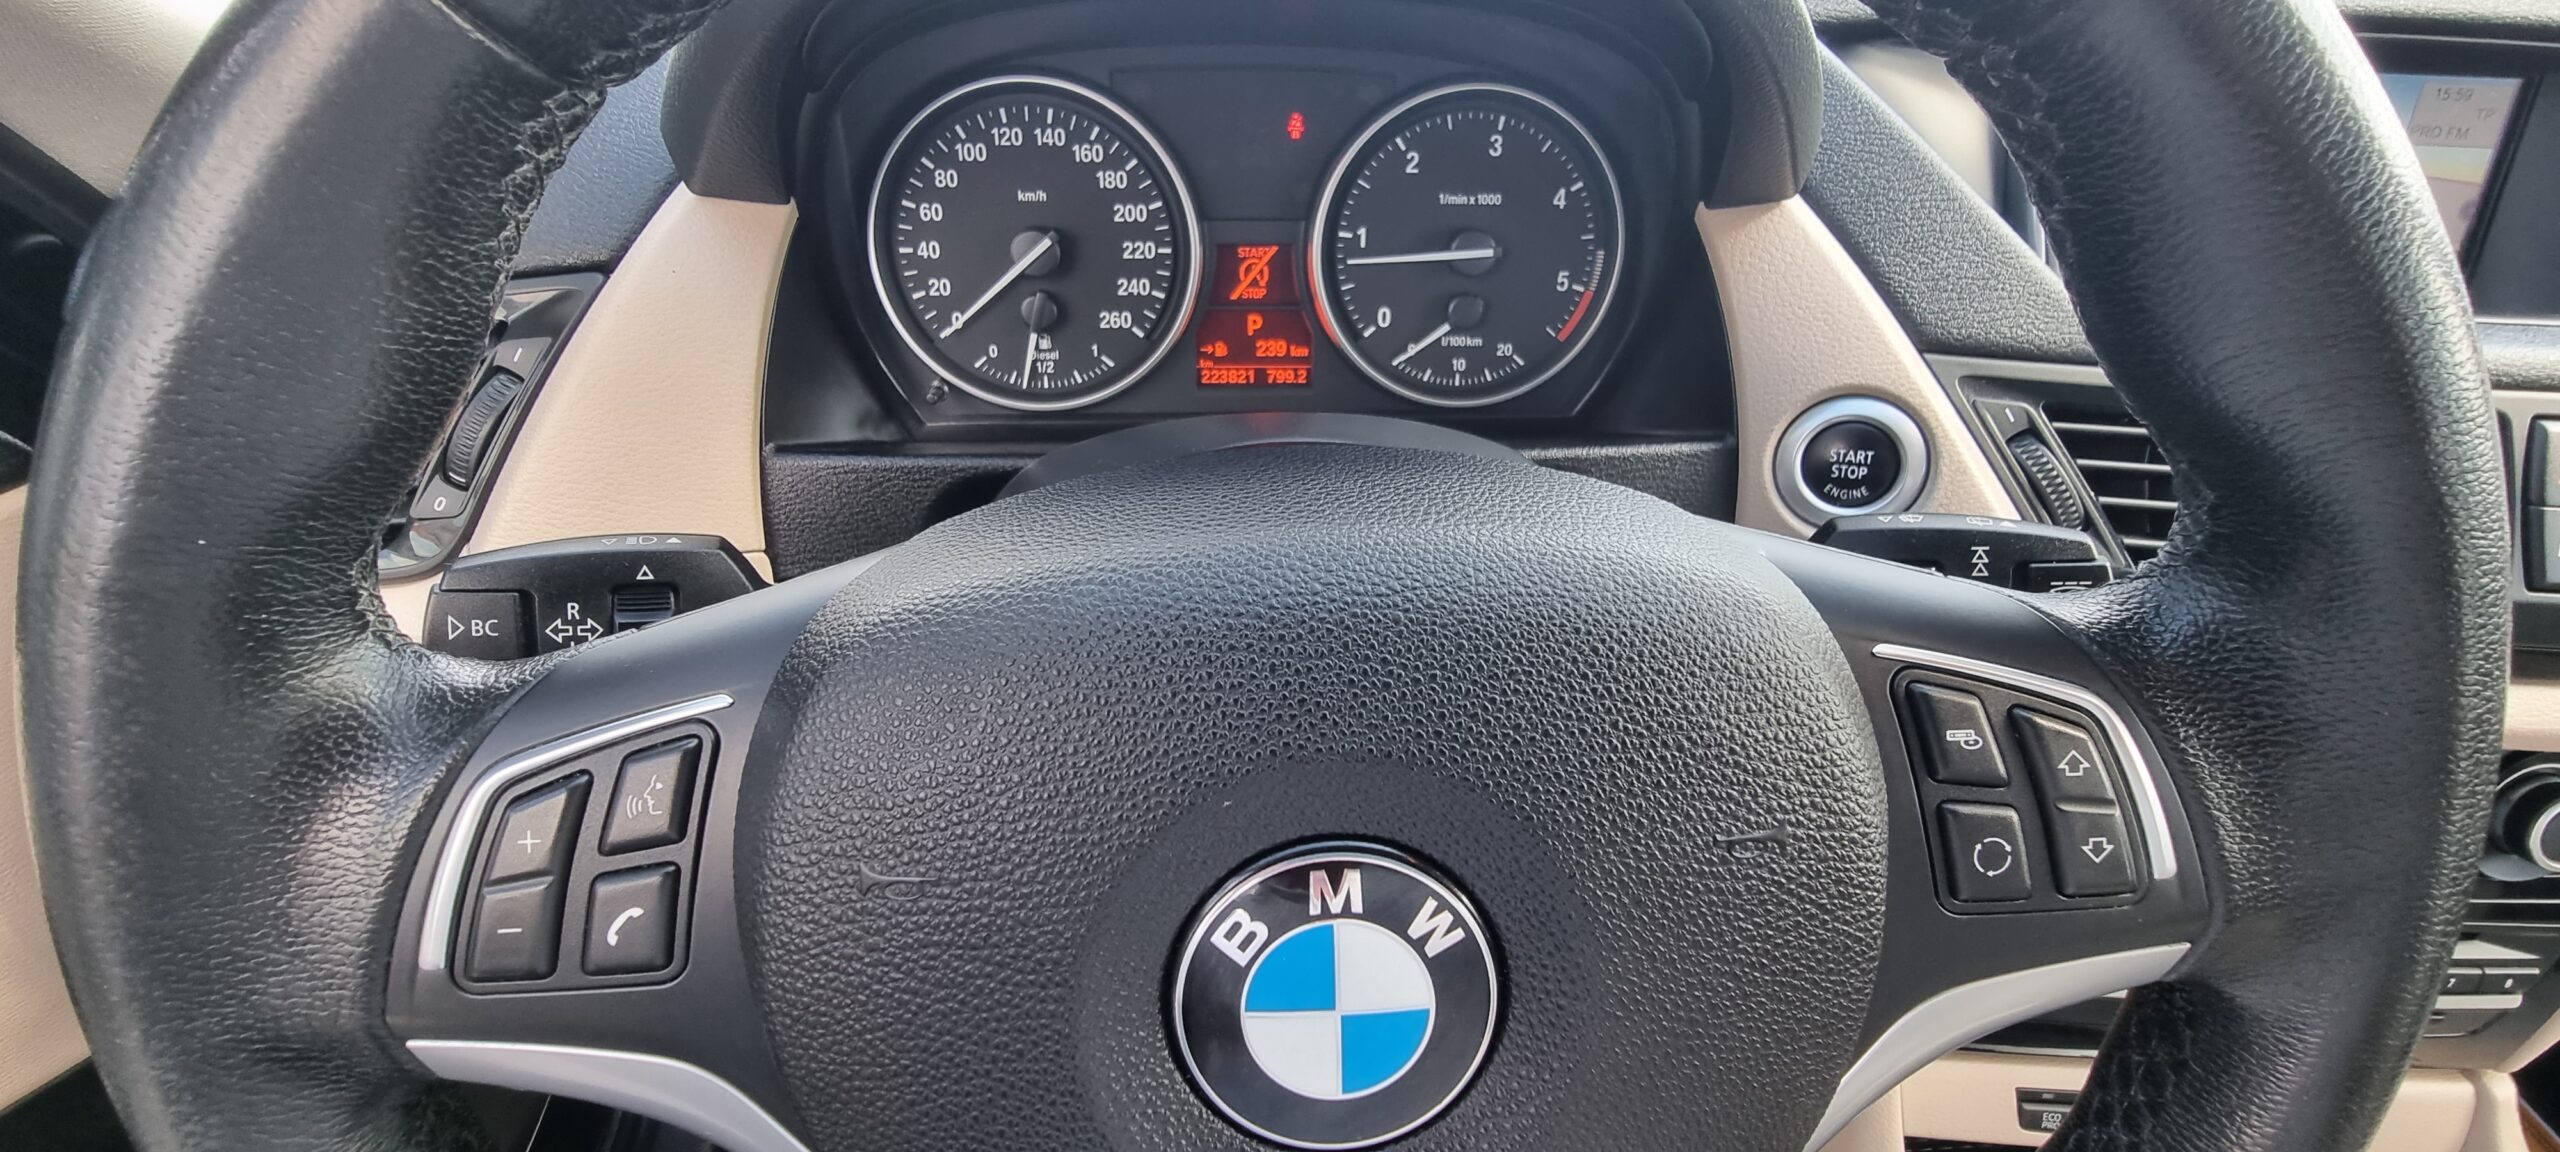 BMW X1 X-DRIVE, 2.0 DIESEL, 143 CP,AUTOMAT EURO 5, AN 2012  FACELIFT